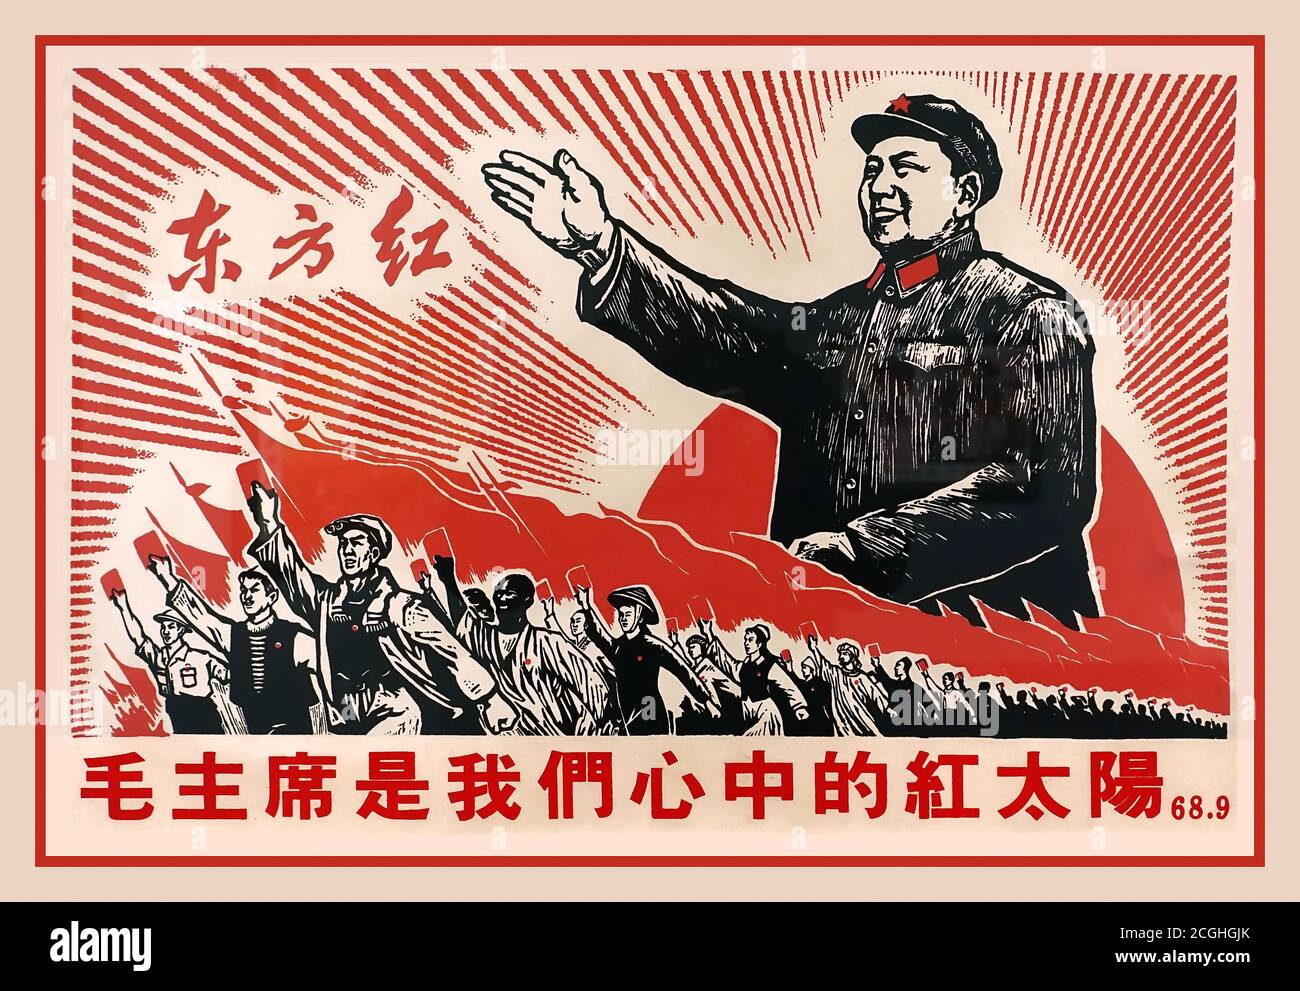 IL PRESIDENTE MAO Vintage anni '60 Propaganda Poster con slogan "Chairman Mao is the Red Sun in our Hearts", 68.9 Repubblica popolare Cinese, 1968, litografia. Il presidente Mao, era un rivoluzionario comunista cinese che divenne il padre fondatore della Repubblica popolare Cinese (RPC), che governò come presidente del Partito comunista cinese dalla sua fondazione nel 1949 fino alla sua morte nel 1976. Foto Stock